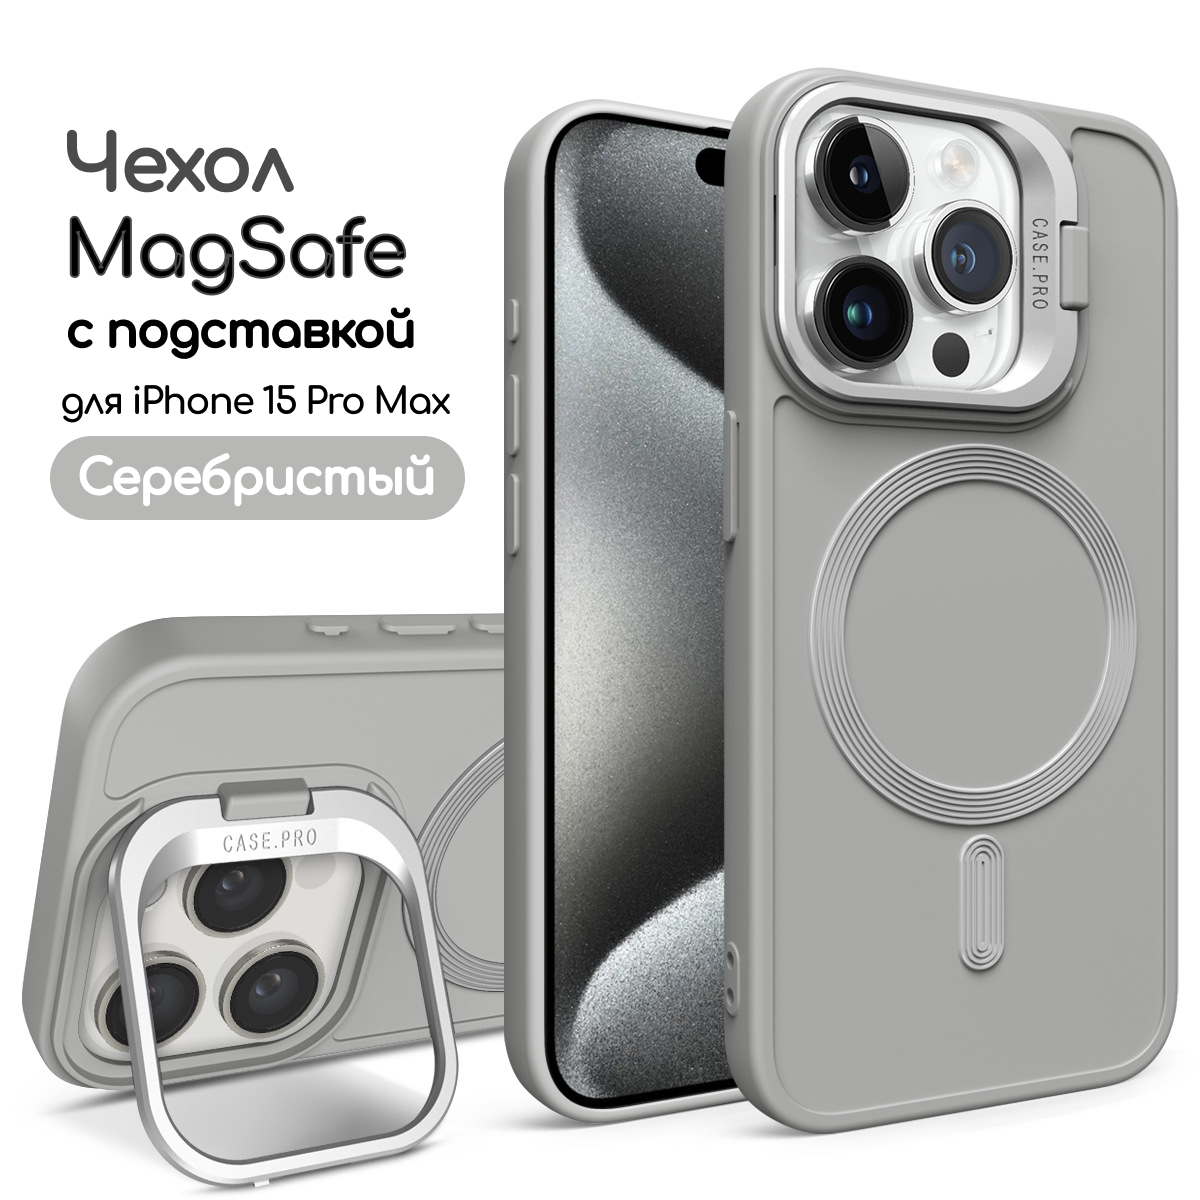 Чехол для iPhone 15 Pro Max с подставкой, айфон 15 про макс противоударный, совместимый с Magsafe (магсейф), серебристый